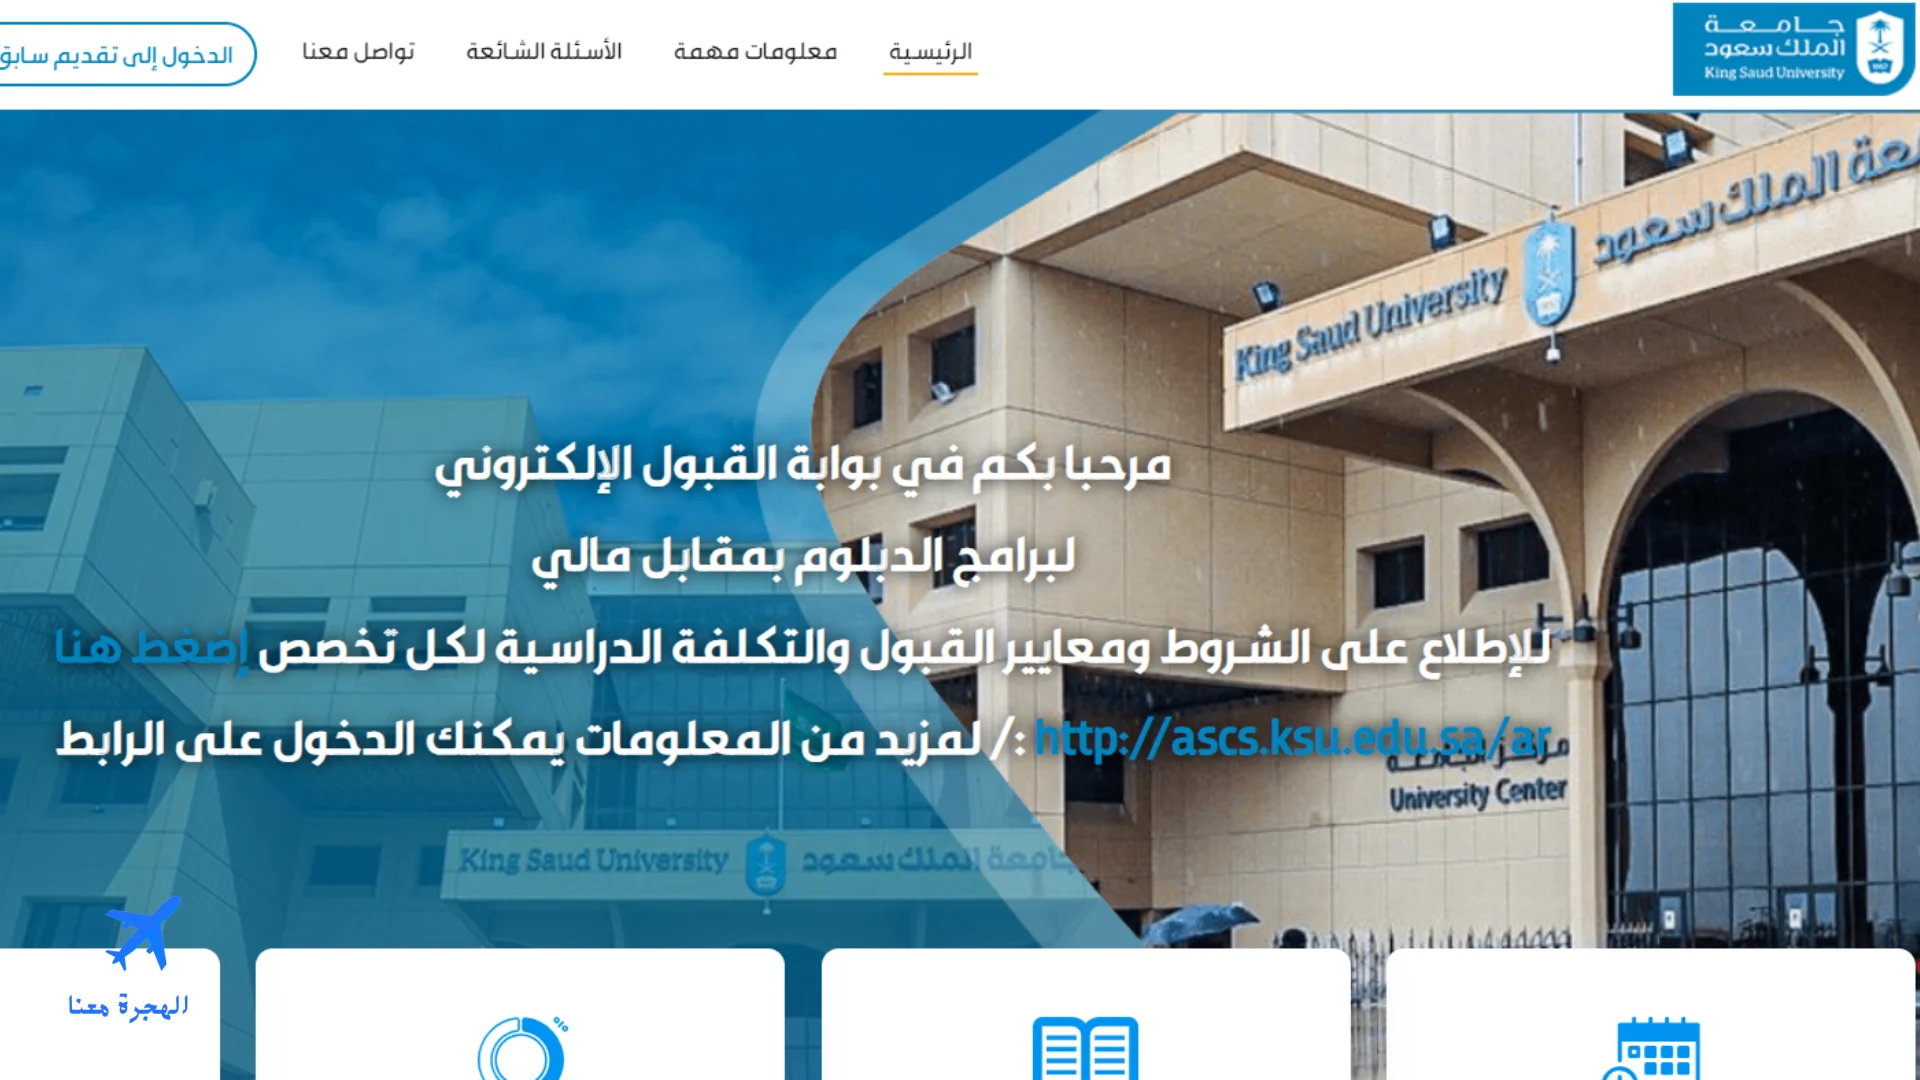 صورة من الموقع الإلكتروني الخاص بالتقديم على دبلوم صحي بعد الثانوية في السعودية جامعة الملك سعود